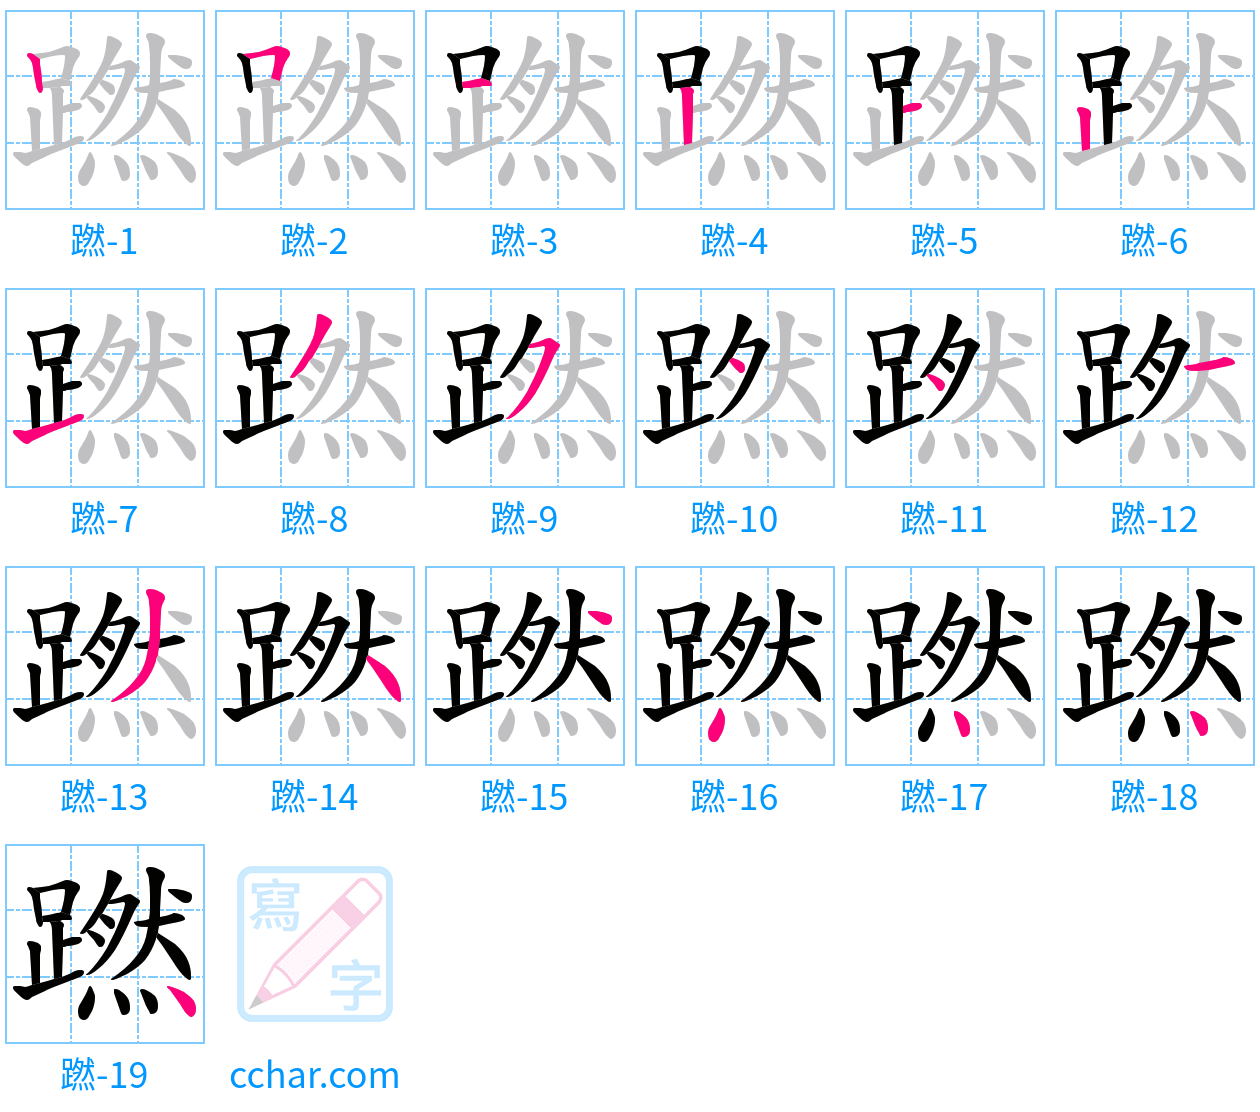 蹨 stroke order step-by-step diagram